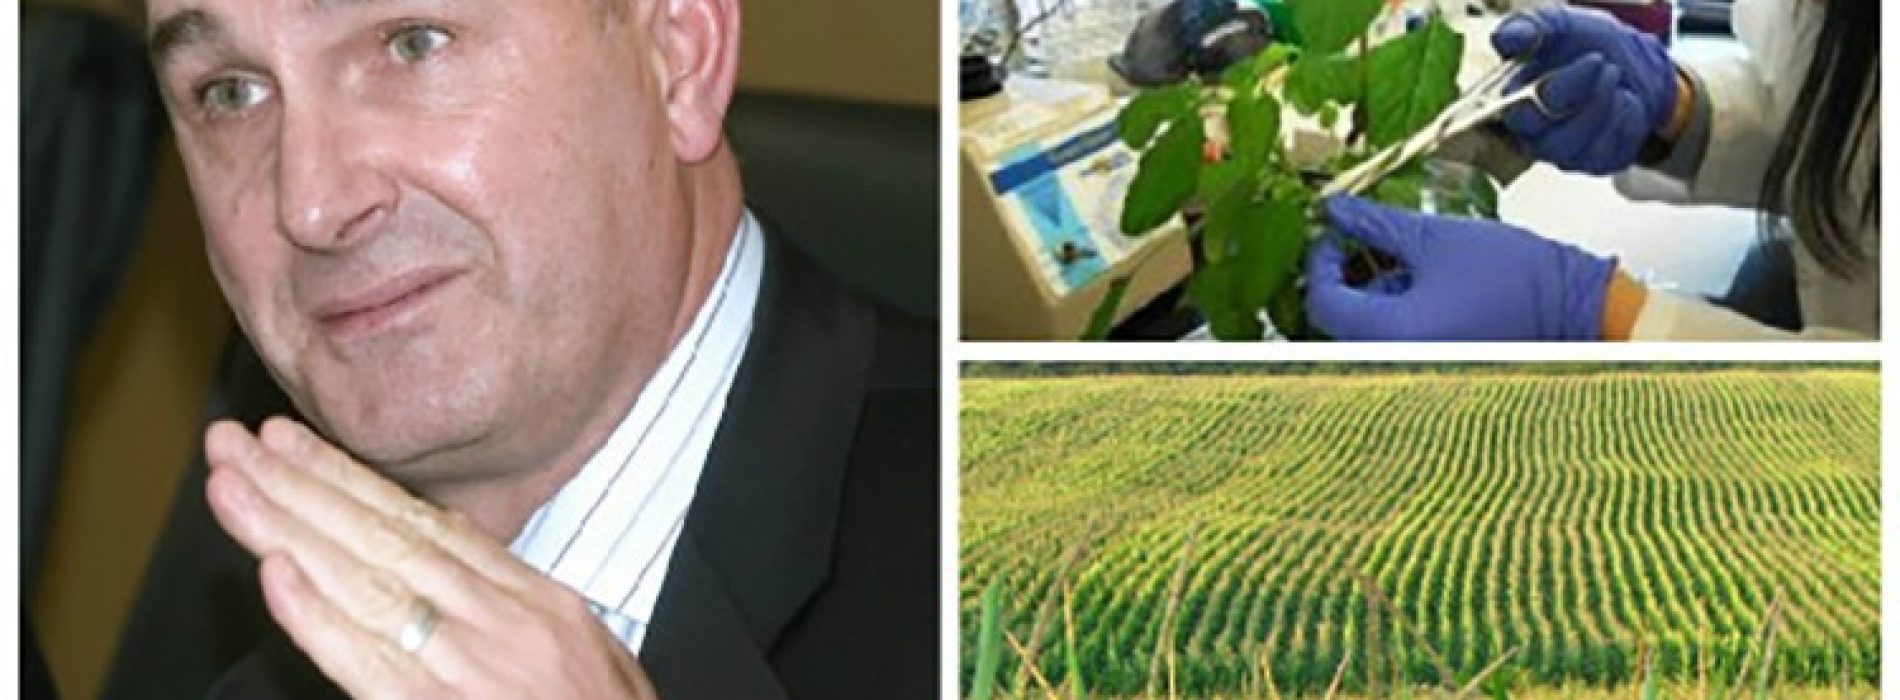 Acteur Mark Ruffalo haalt uit naar Monsanto: “Jullie vergiftigen mensen”